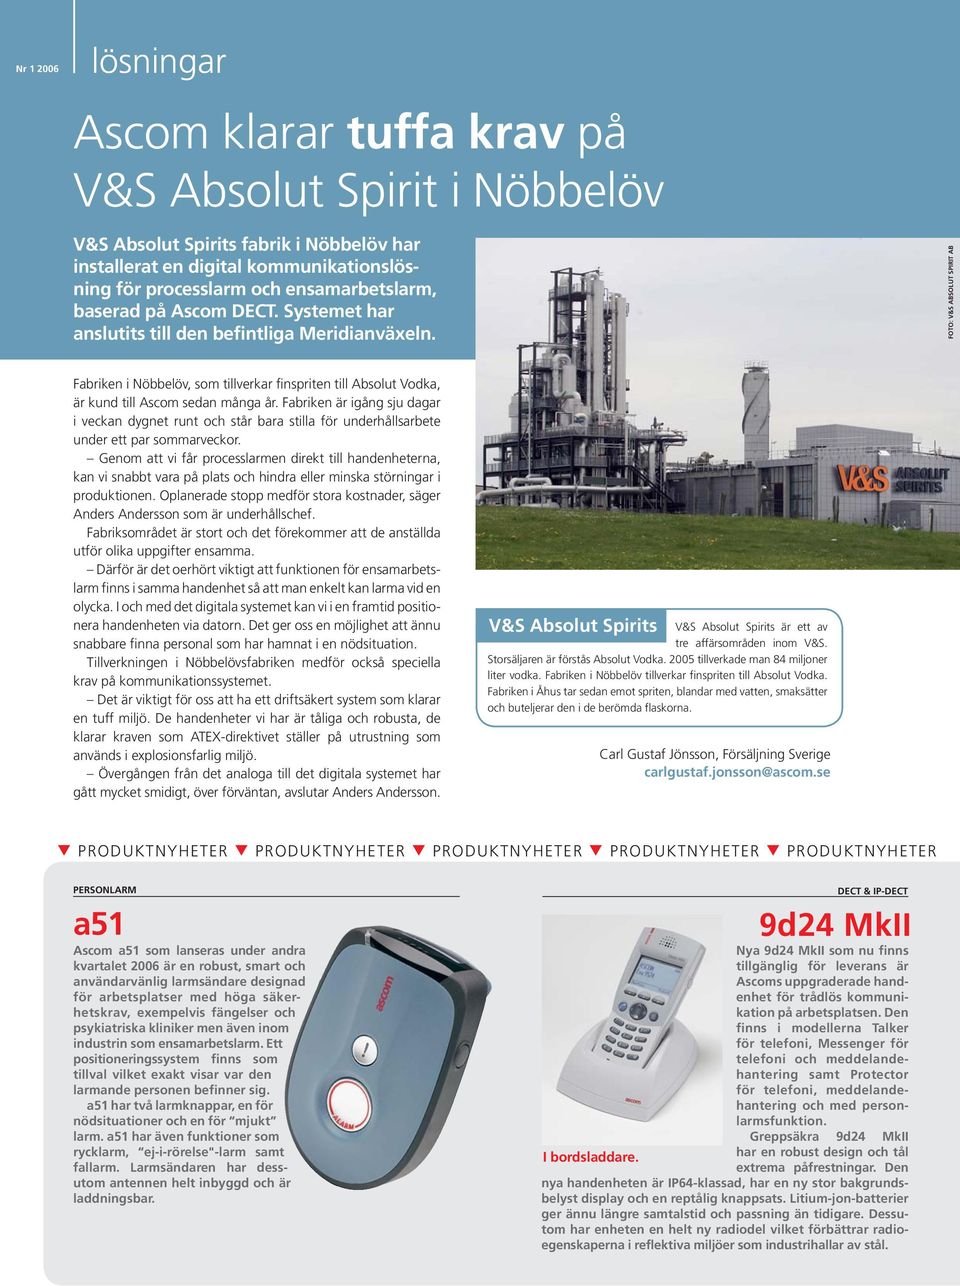 FOTO: V&S ABSOLUT SPIRIT AB Fabriken i Nöbbelöv, som tillverkar finspriten till Absolut Vodka, är kund till Ascom sedan många år.